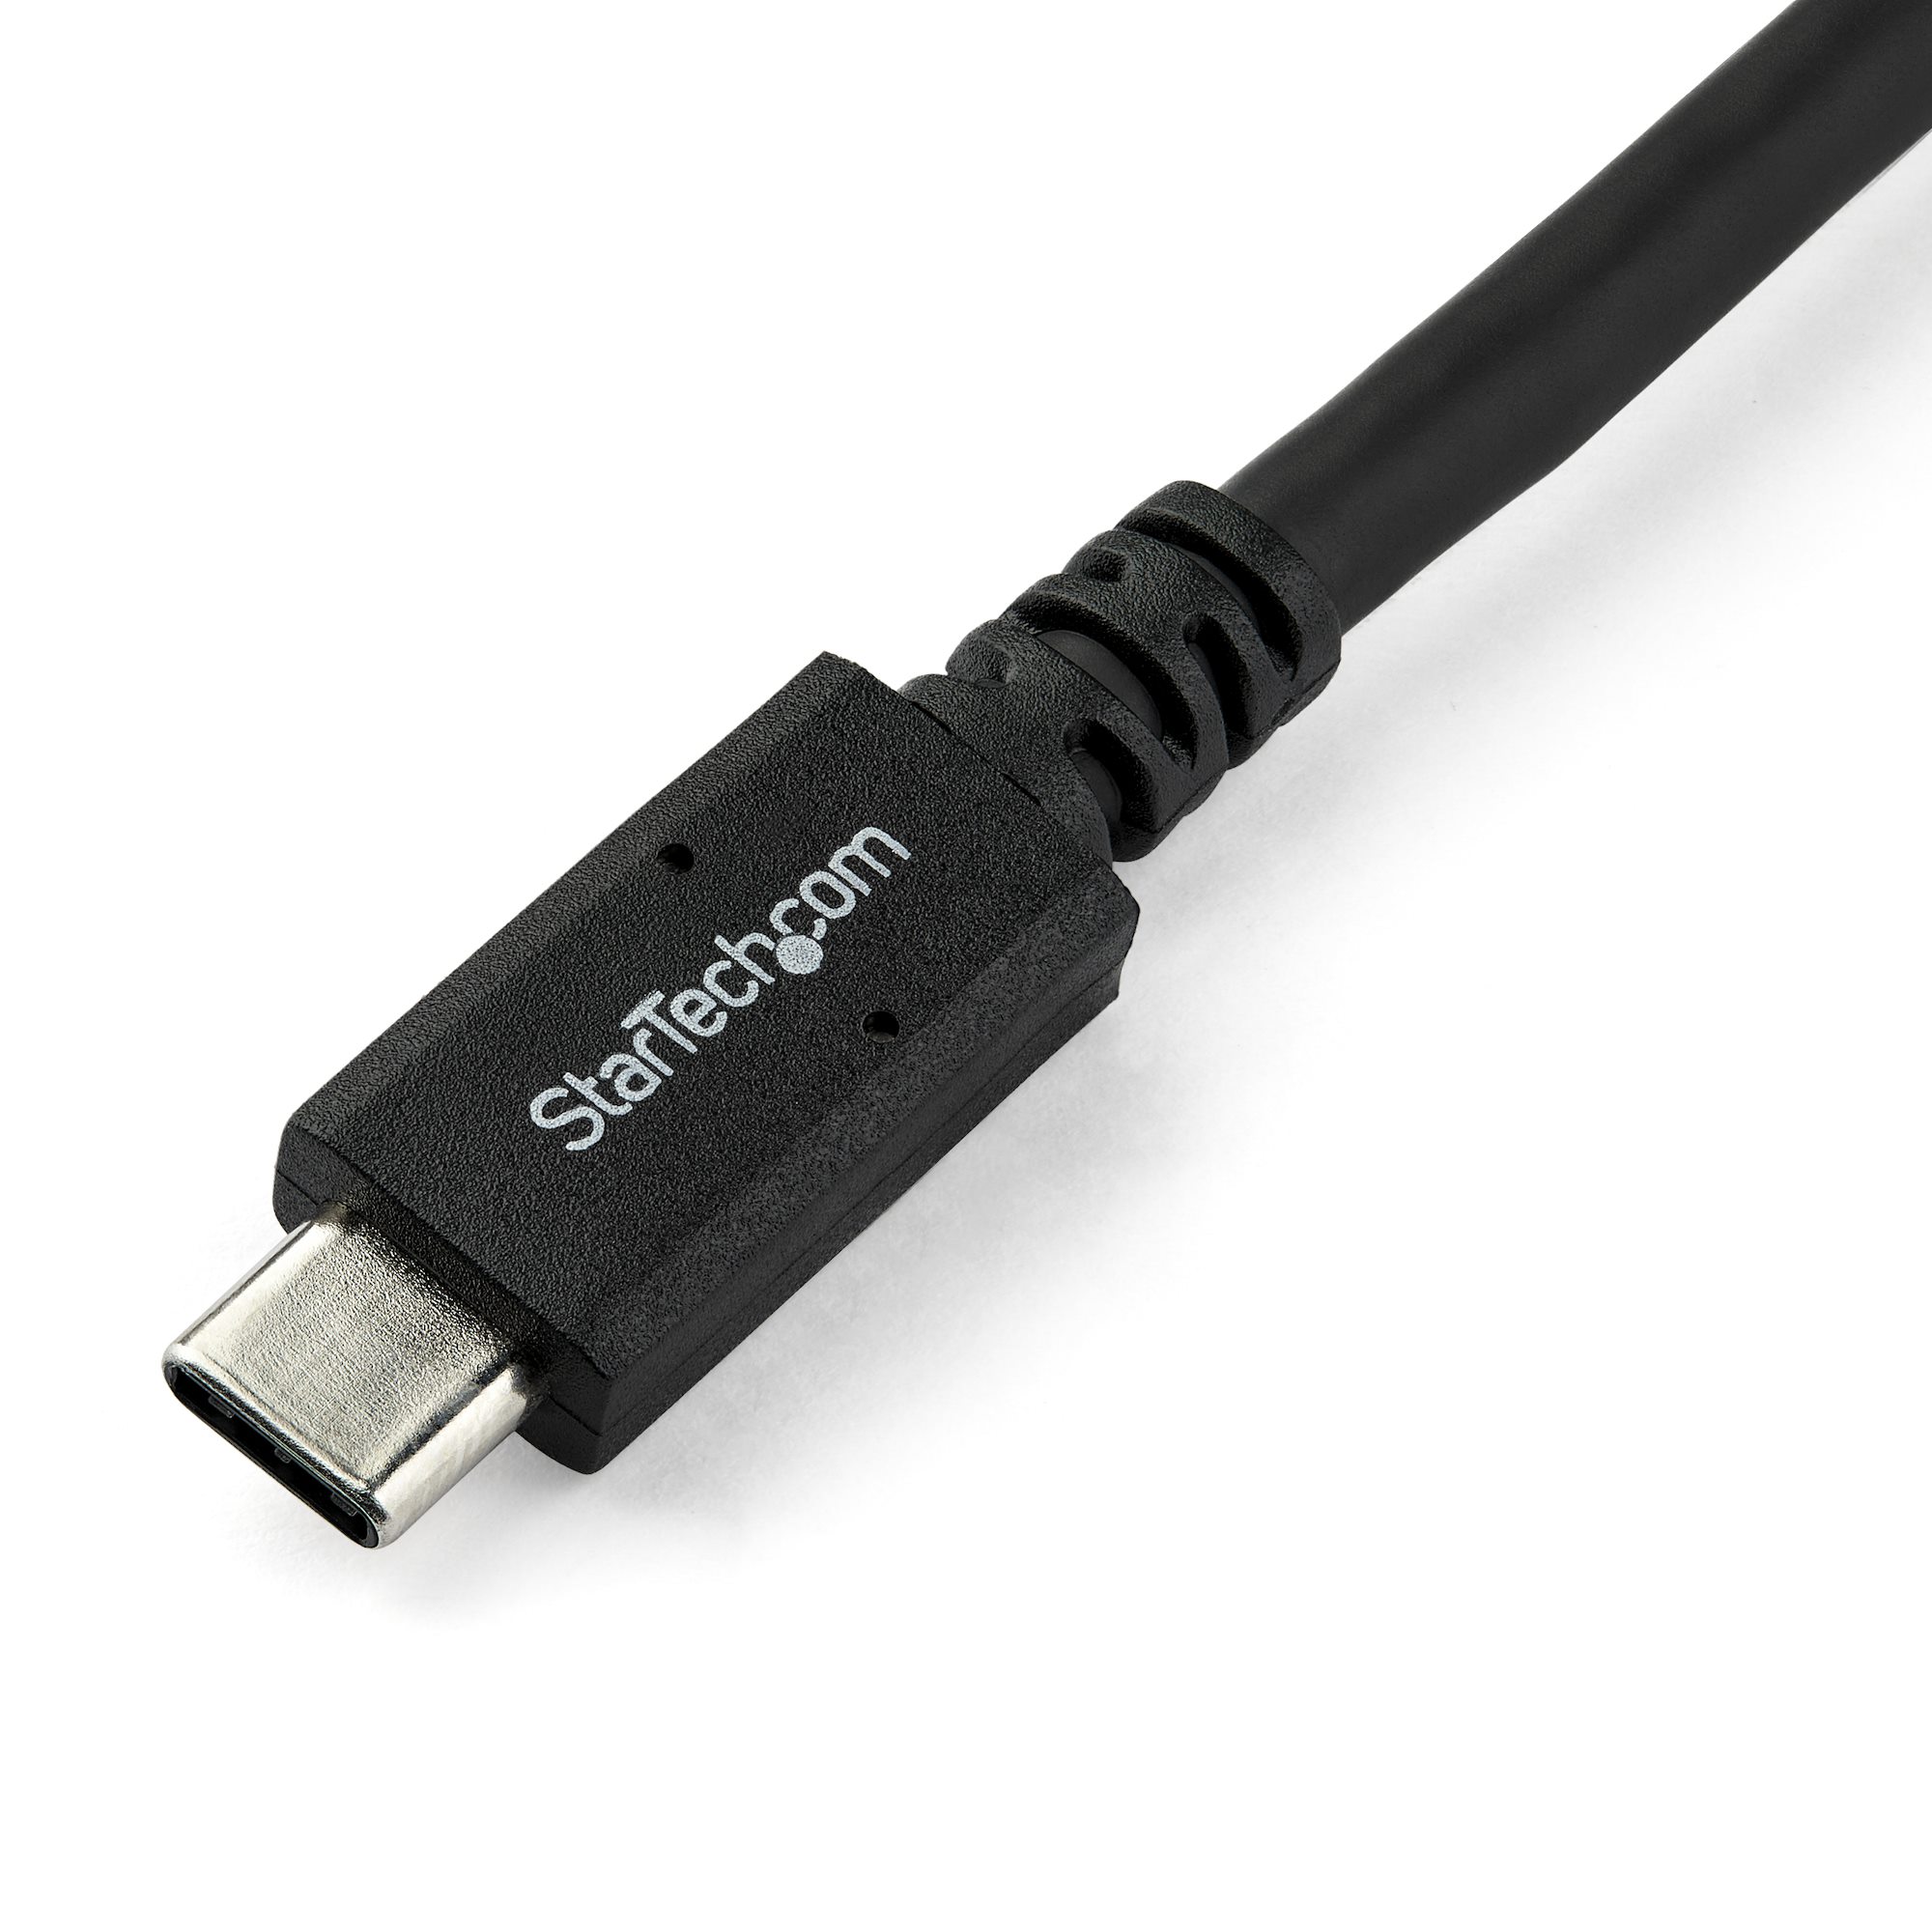 StarTech.com USB315C5C6  USB-C-Kabel mit 5A Power Delivery - 4K - USB 3.0 5Gbit/s - USB-IF zertifiziert - 1,8m - Schwarz